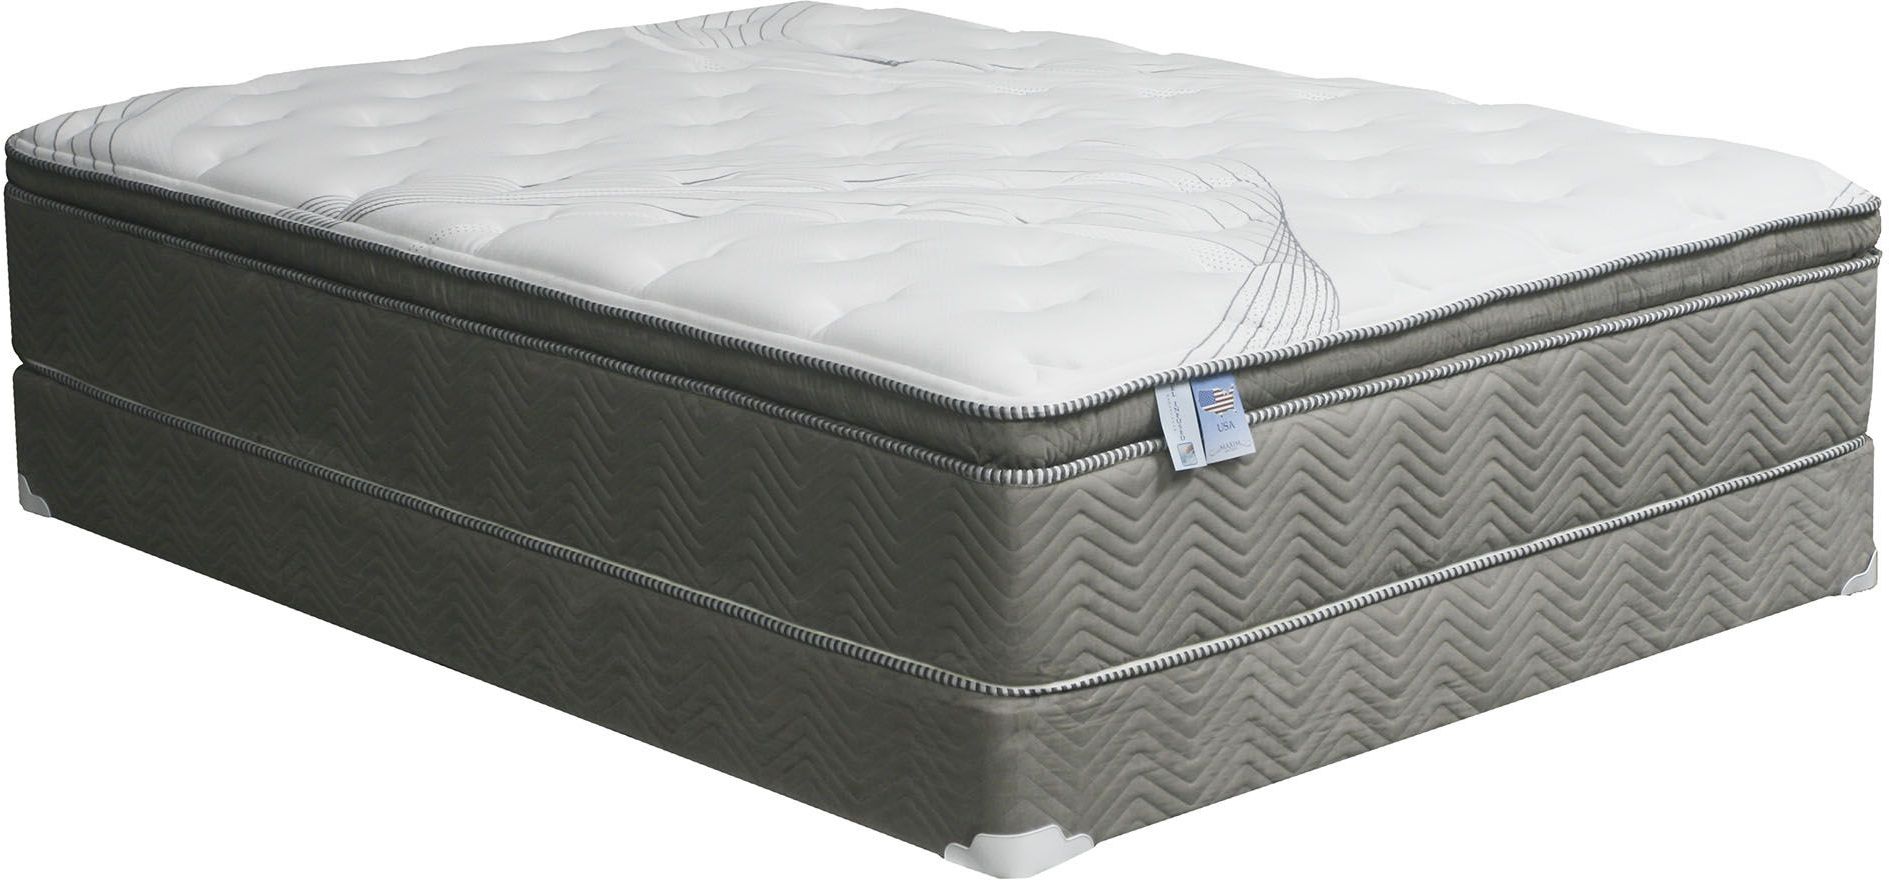 price of pillow top queen mattress